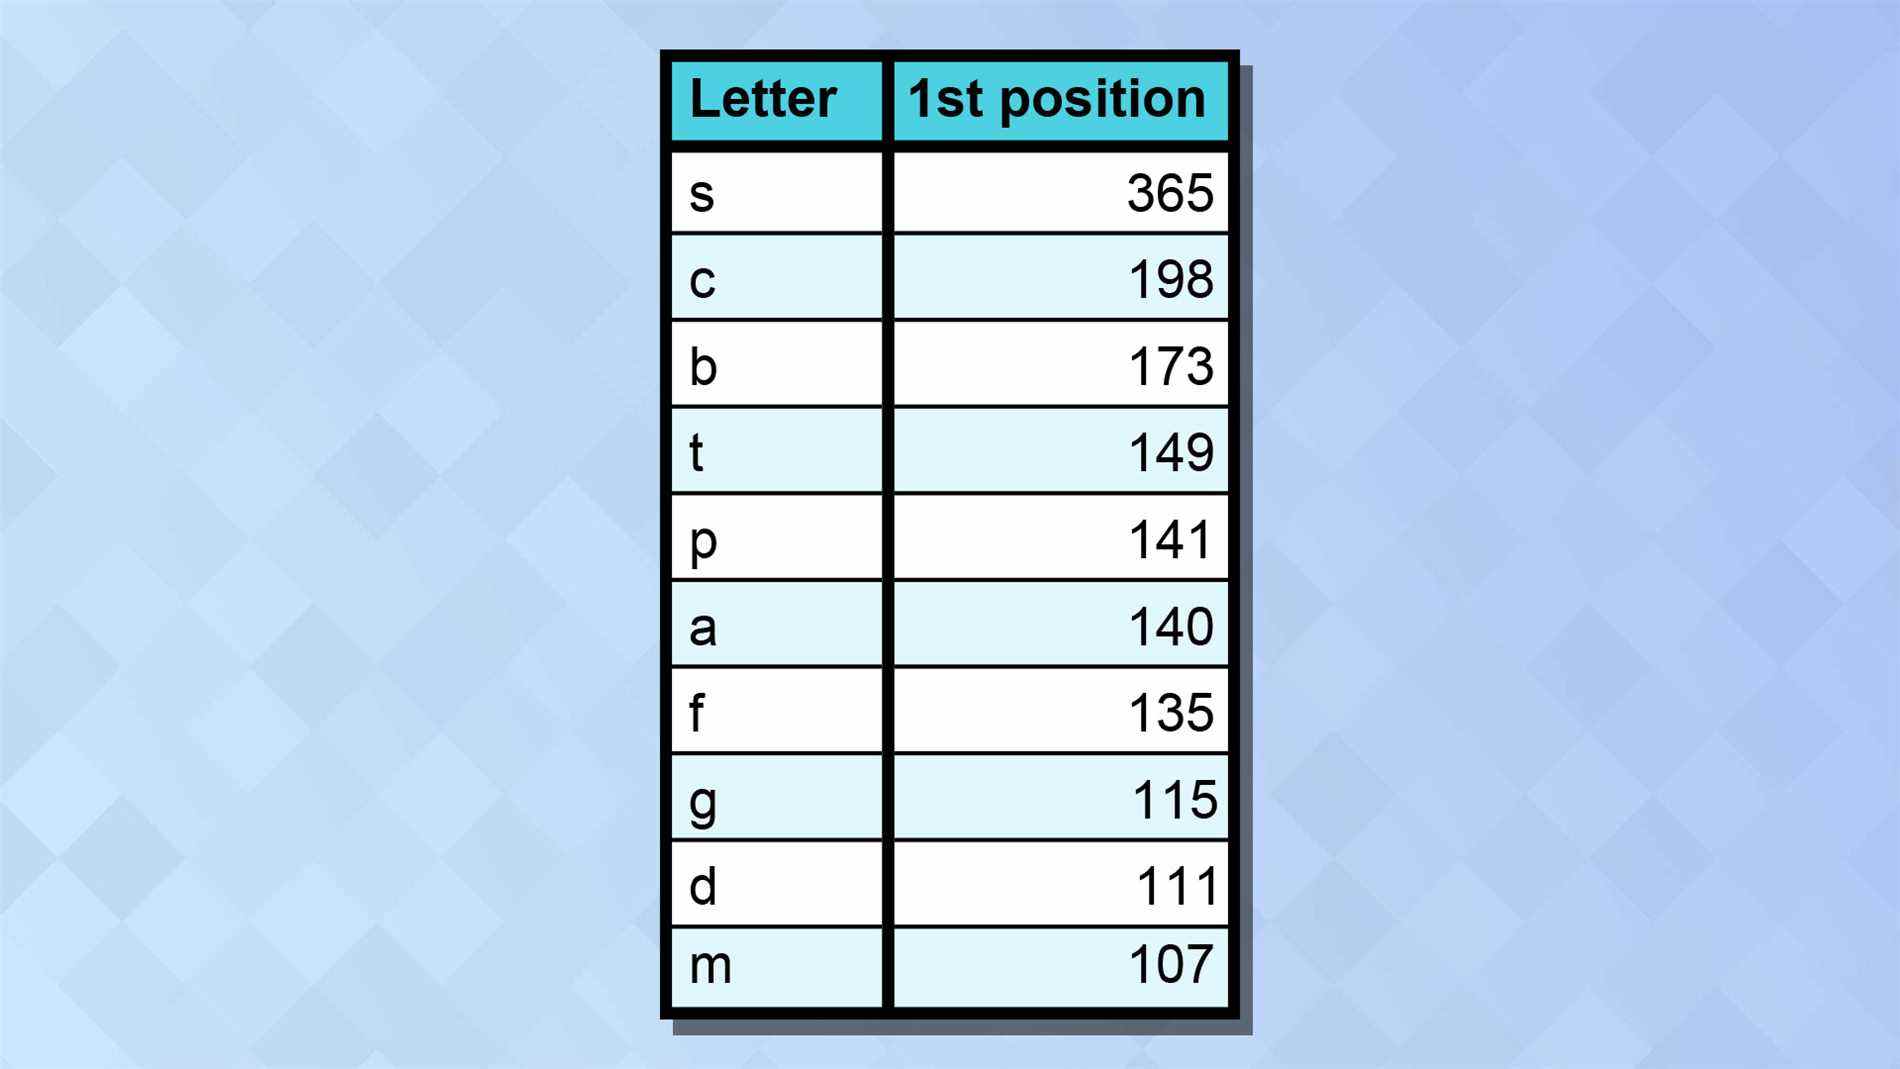 Un tableau montrant les lettres de début les plus courantes parmi les réponses Wordle